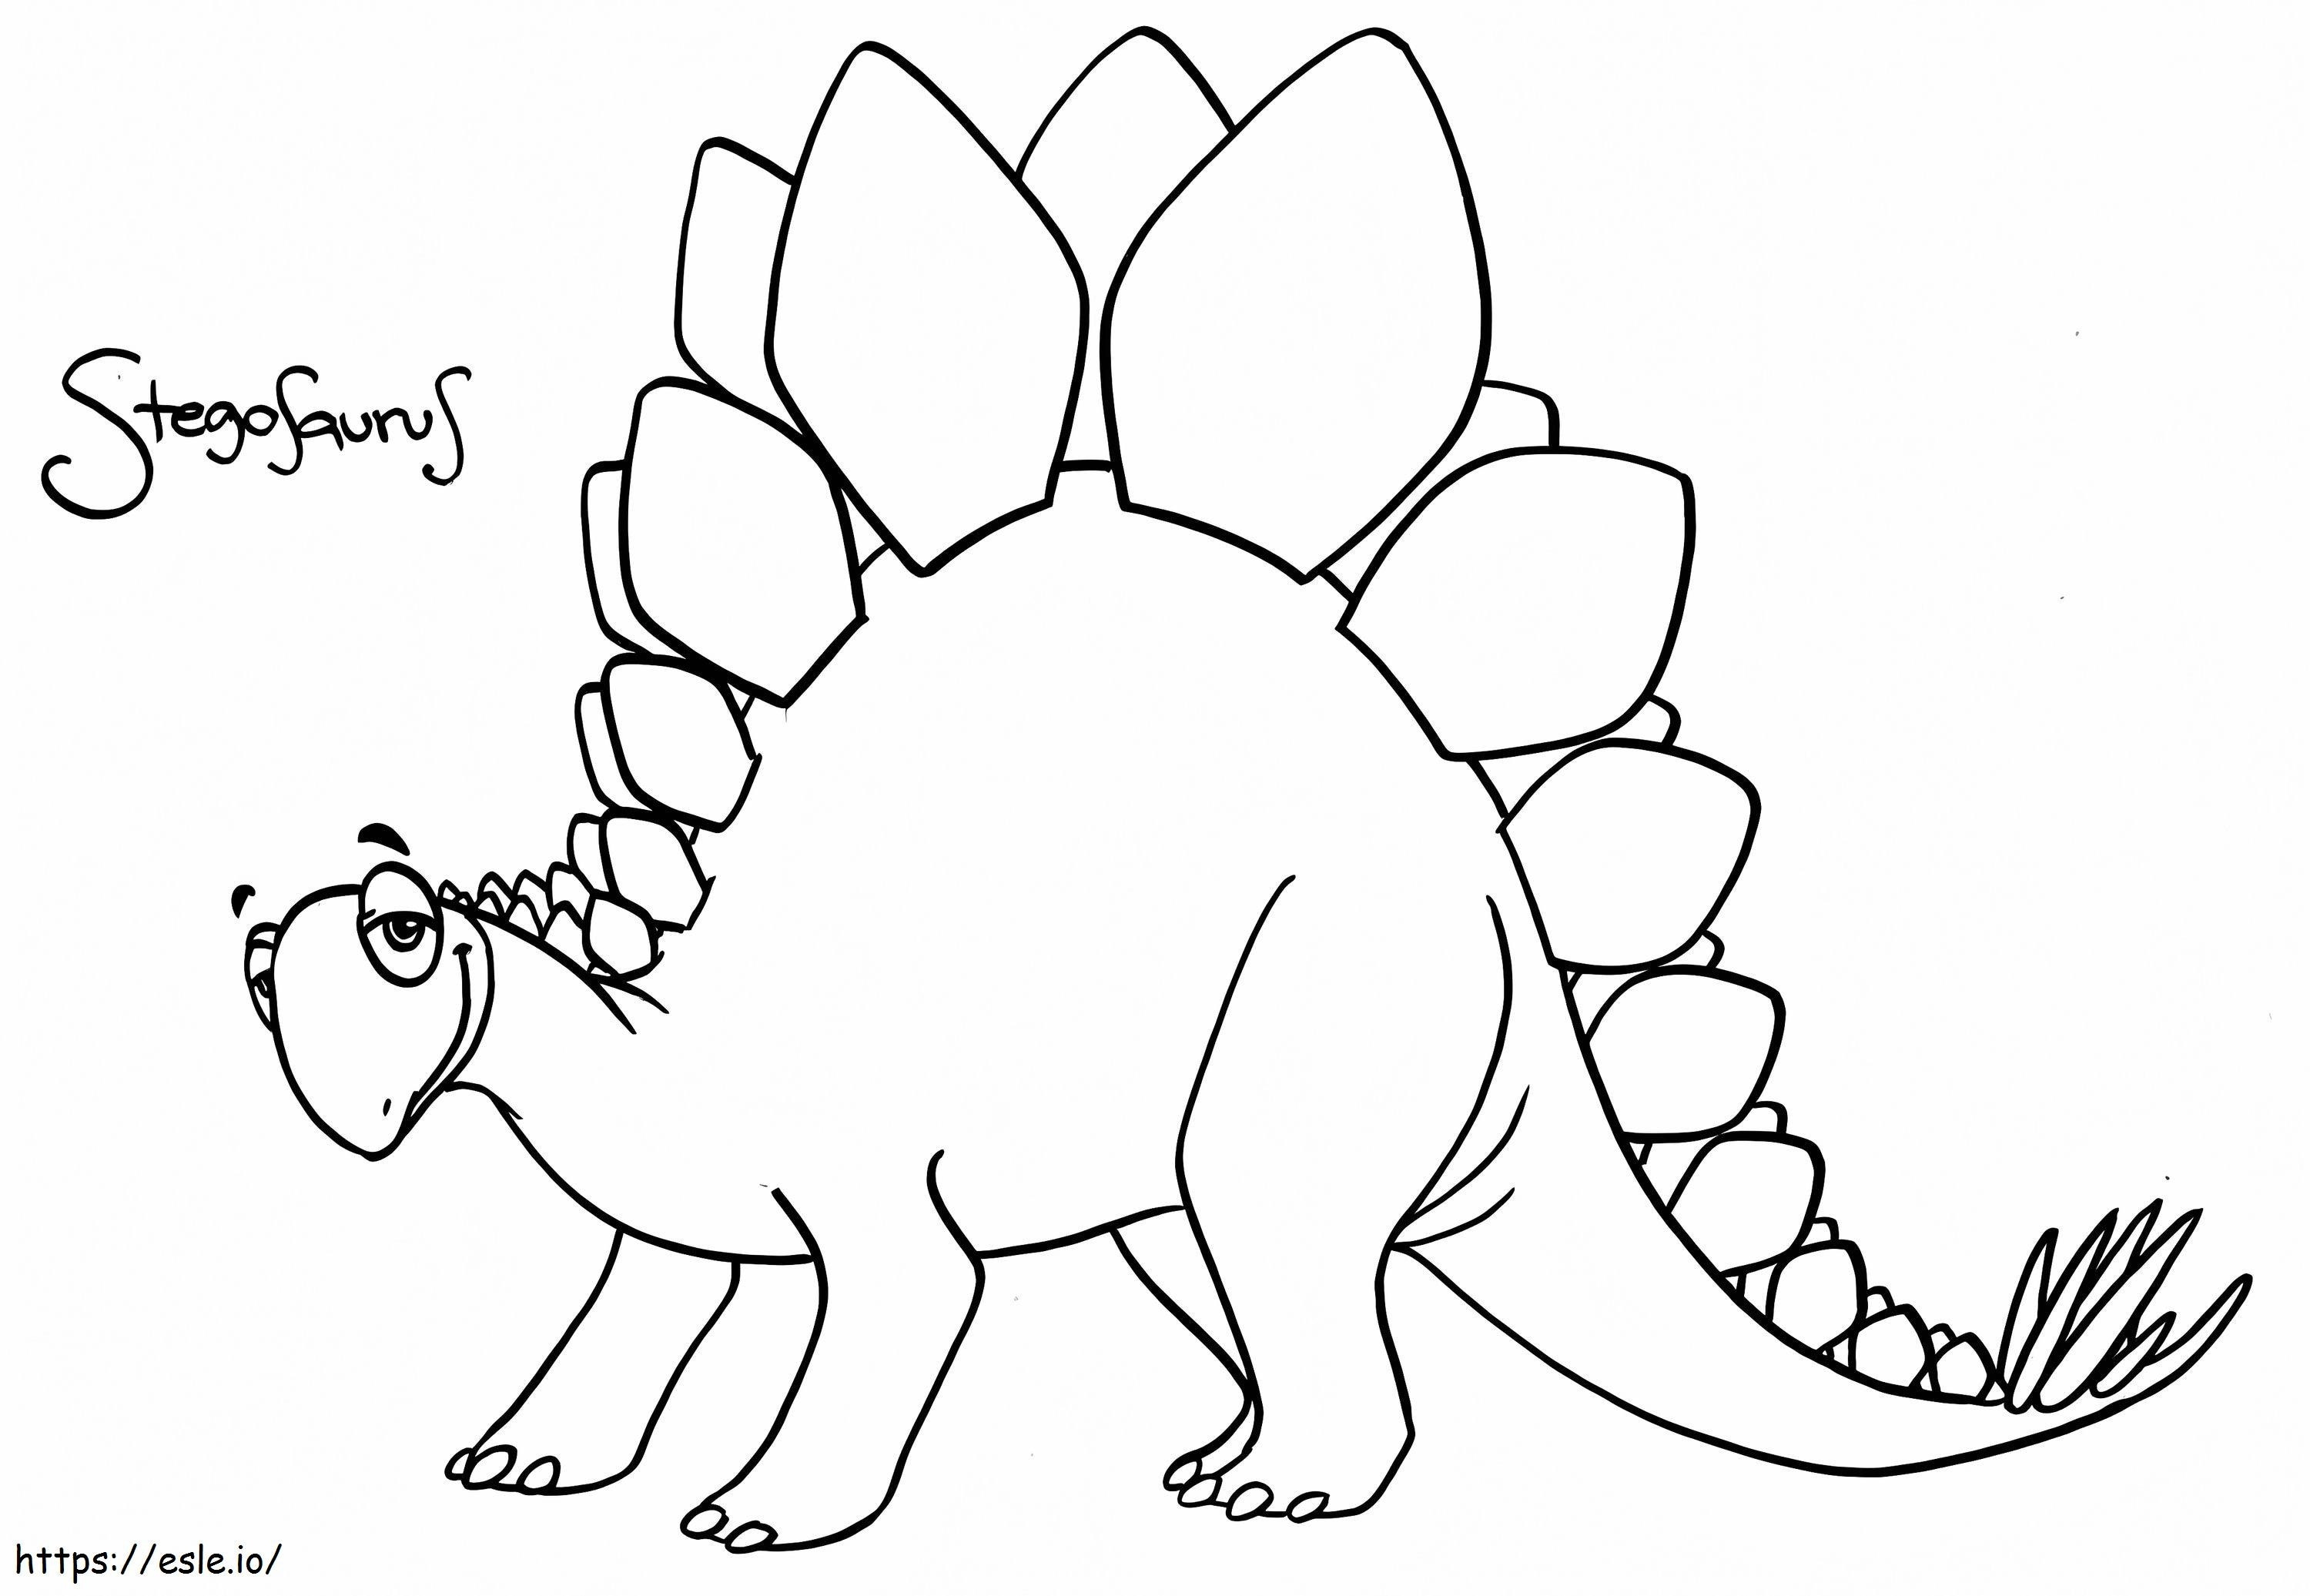 Gülümseyen Stegosaurus boyama